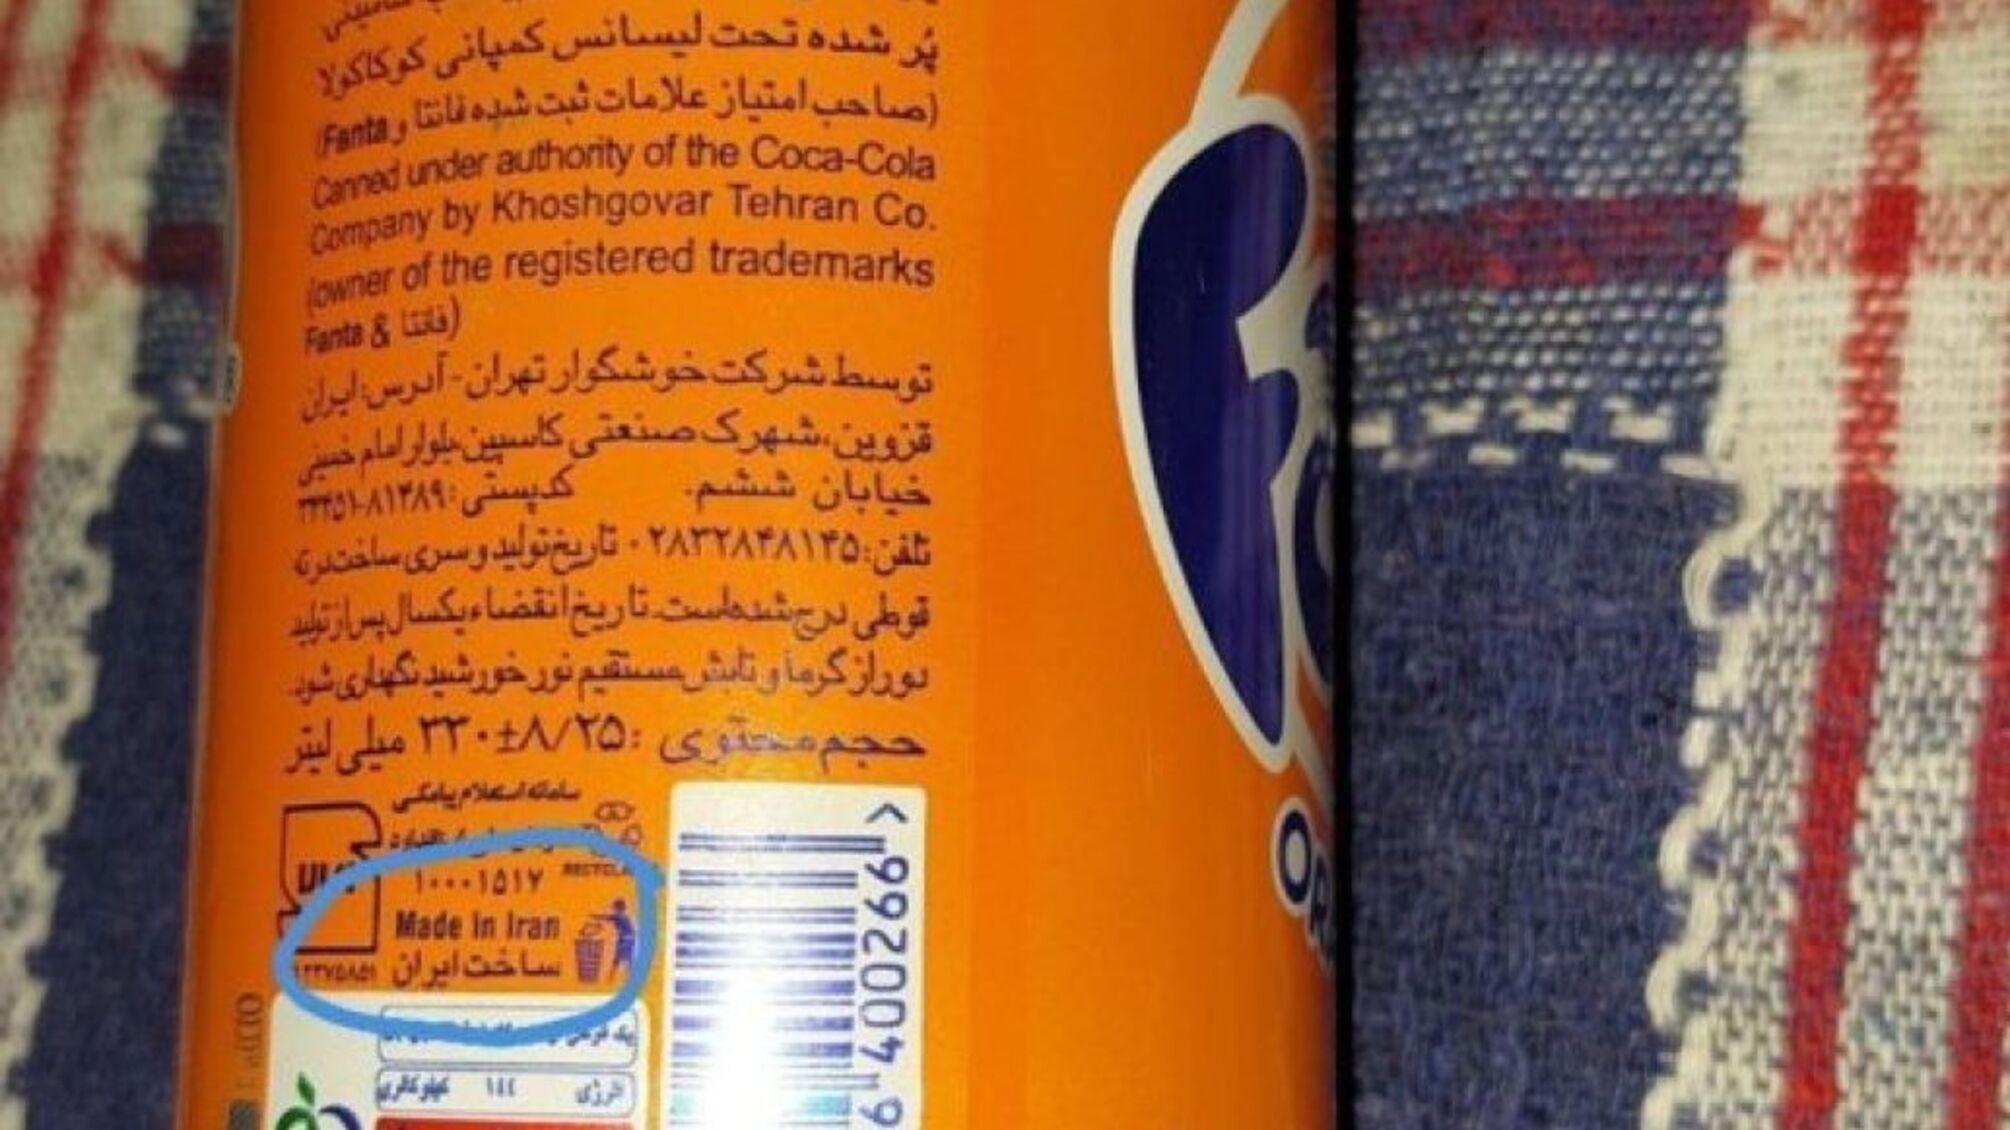 Во временно захваченный Херсон россияне завозят иранские продукты